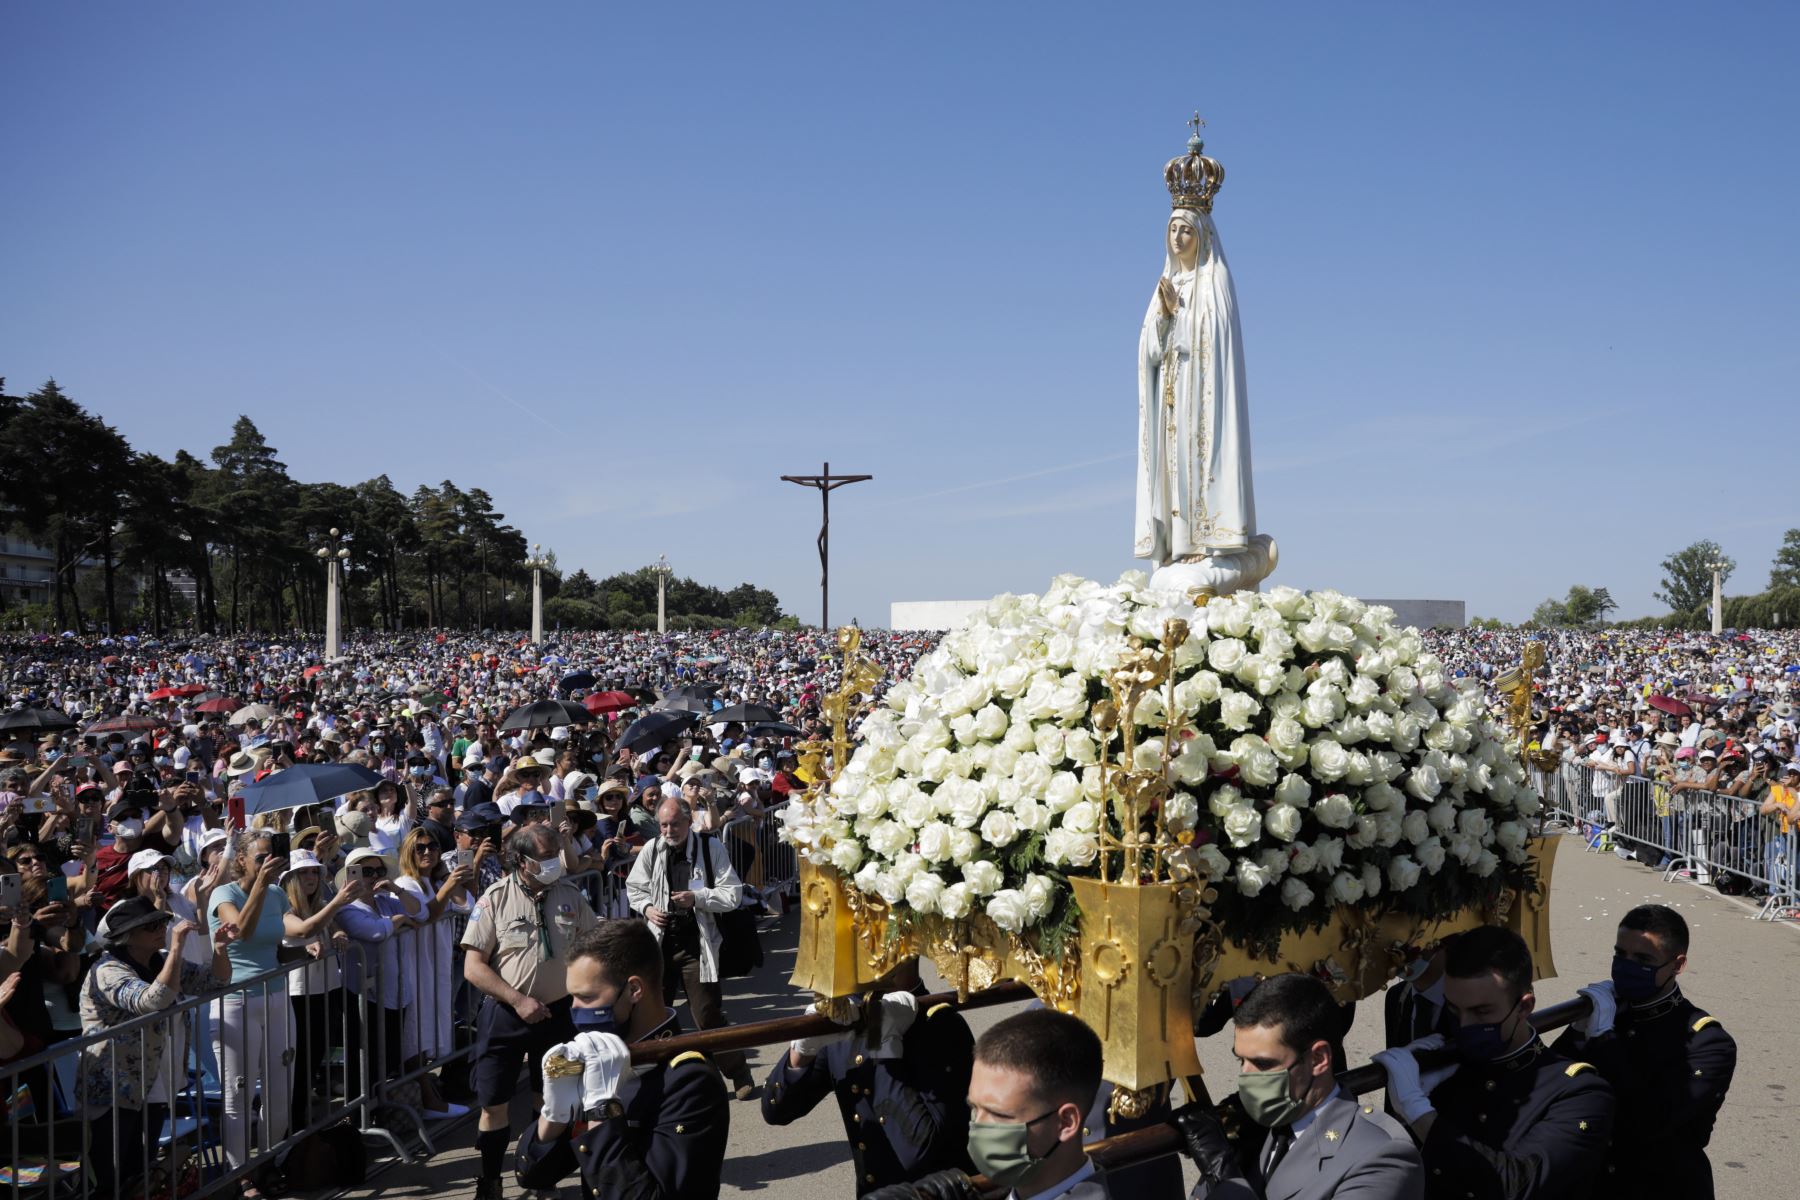 La estatua de Nuestra Señora de Fátima en una litera decorada con flores se lleva a través de una multitud de fieles durante las celebraciones religiosas de la Peregrinación del Aniversario Internacional de Mayo en el Santuario de Fátima, en Ourem, Portugal.
Foto: EFE